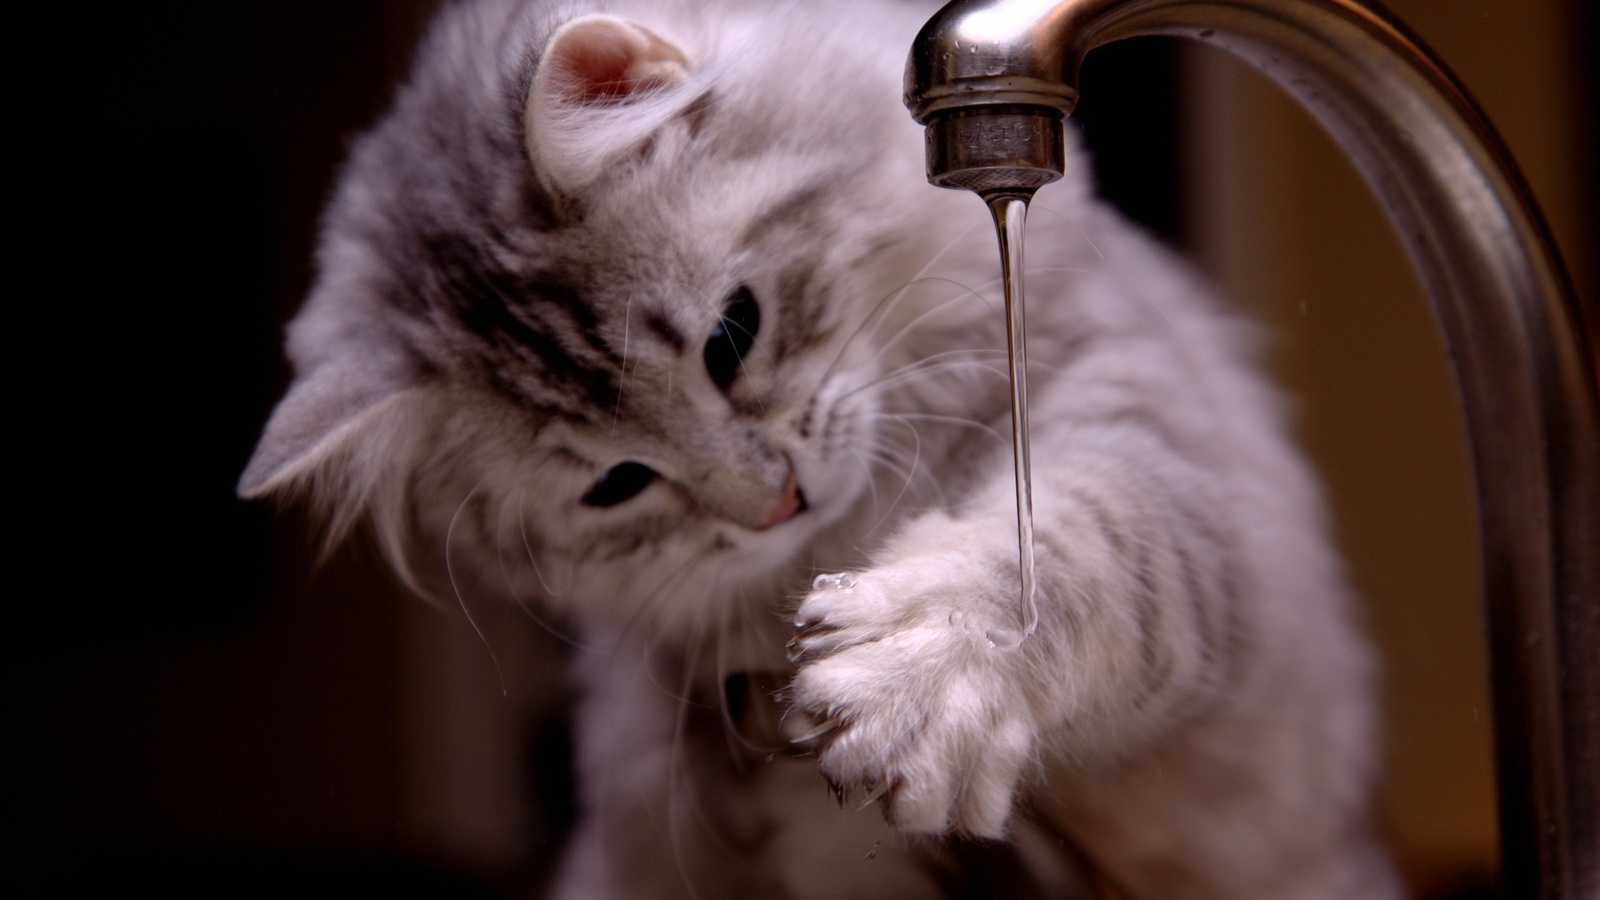 Как искупать кота, если он боится воды